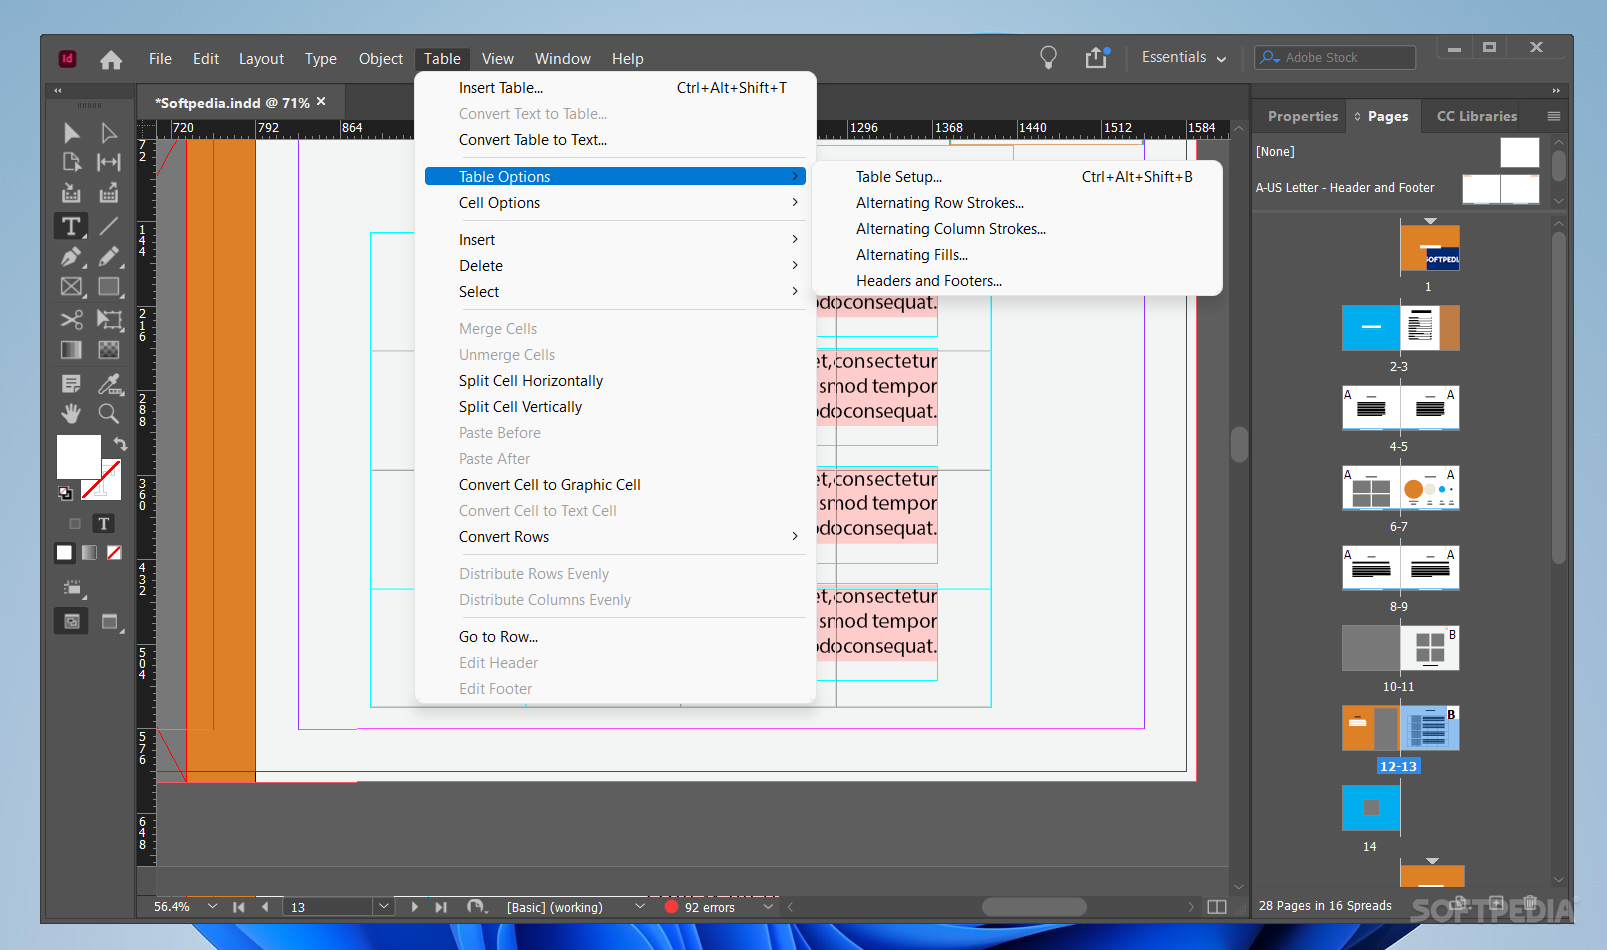 download the last version for windows Adobe InDesign 2023 v18.4.0.56